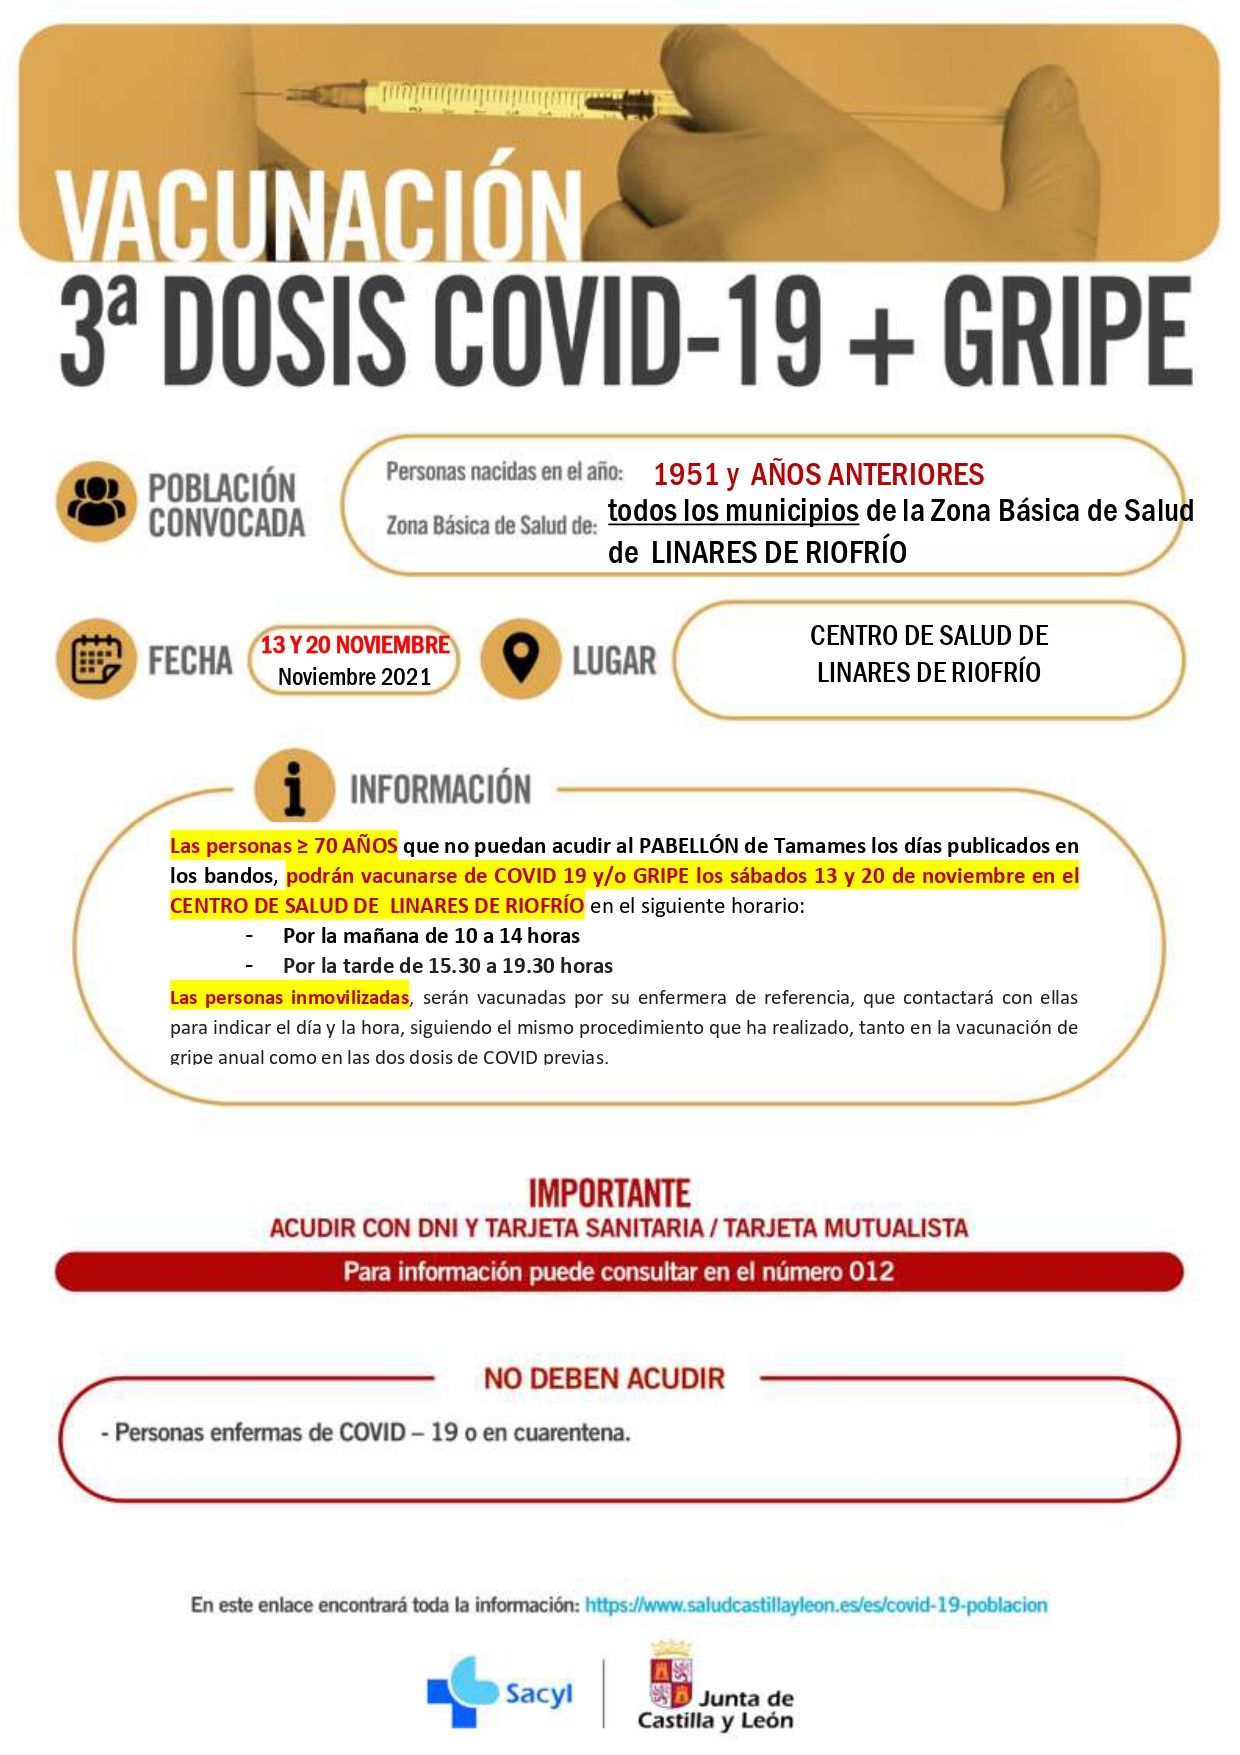 LINARES DE RIOFRIO VACUNACIÓN GRIPE + COVID 19 ≥ 70 AÑOS  13 y 20 NOVIEMBRE 2021 page 0001